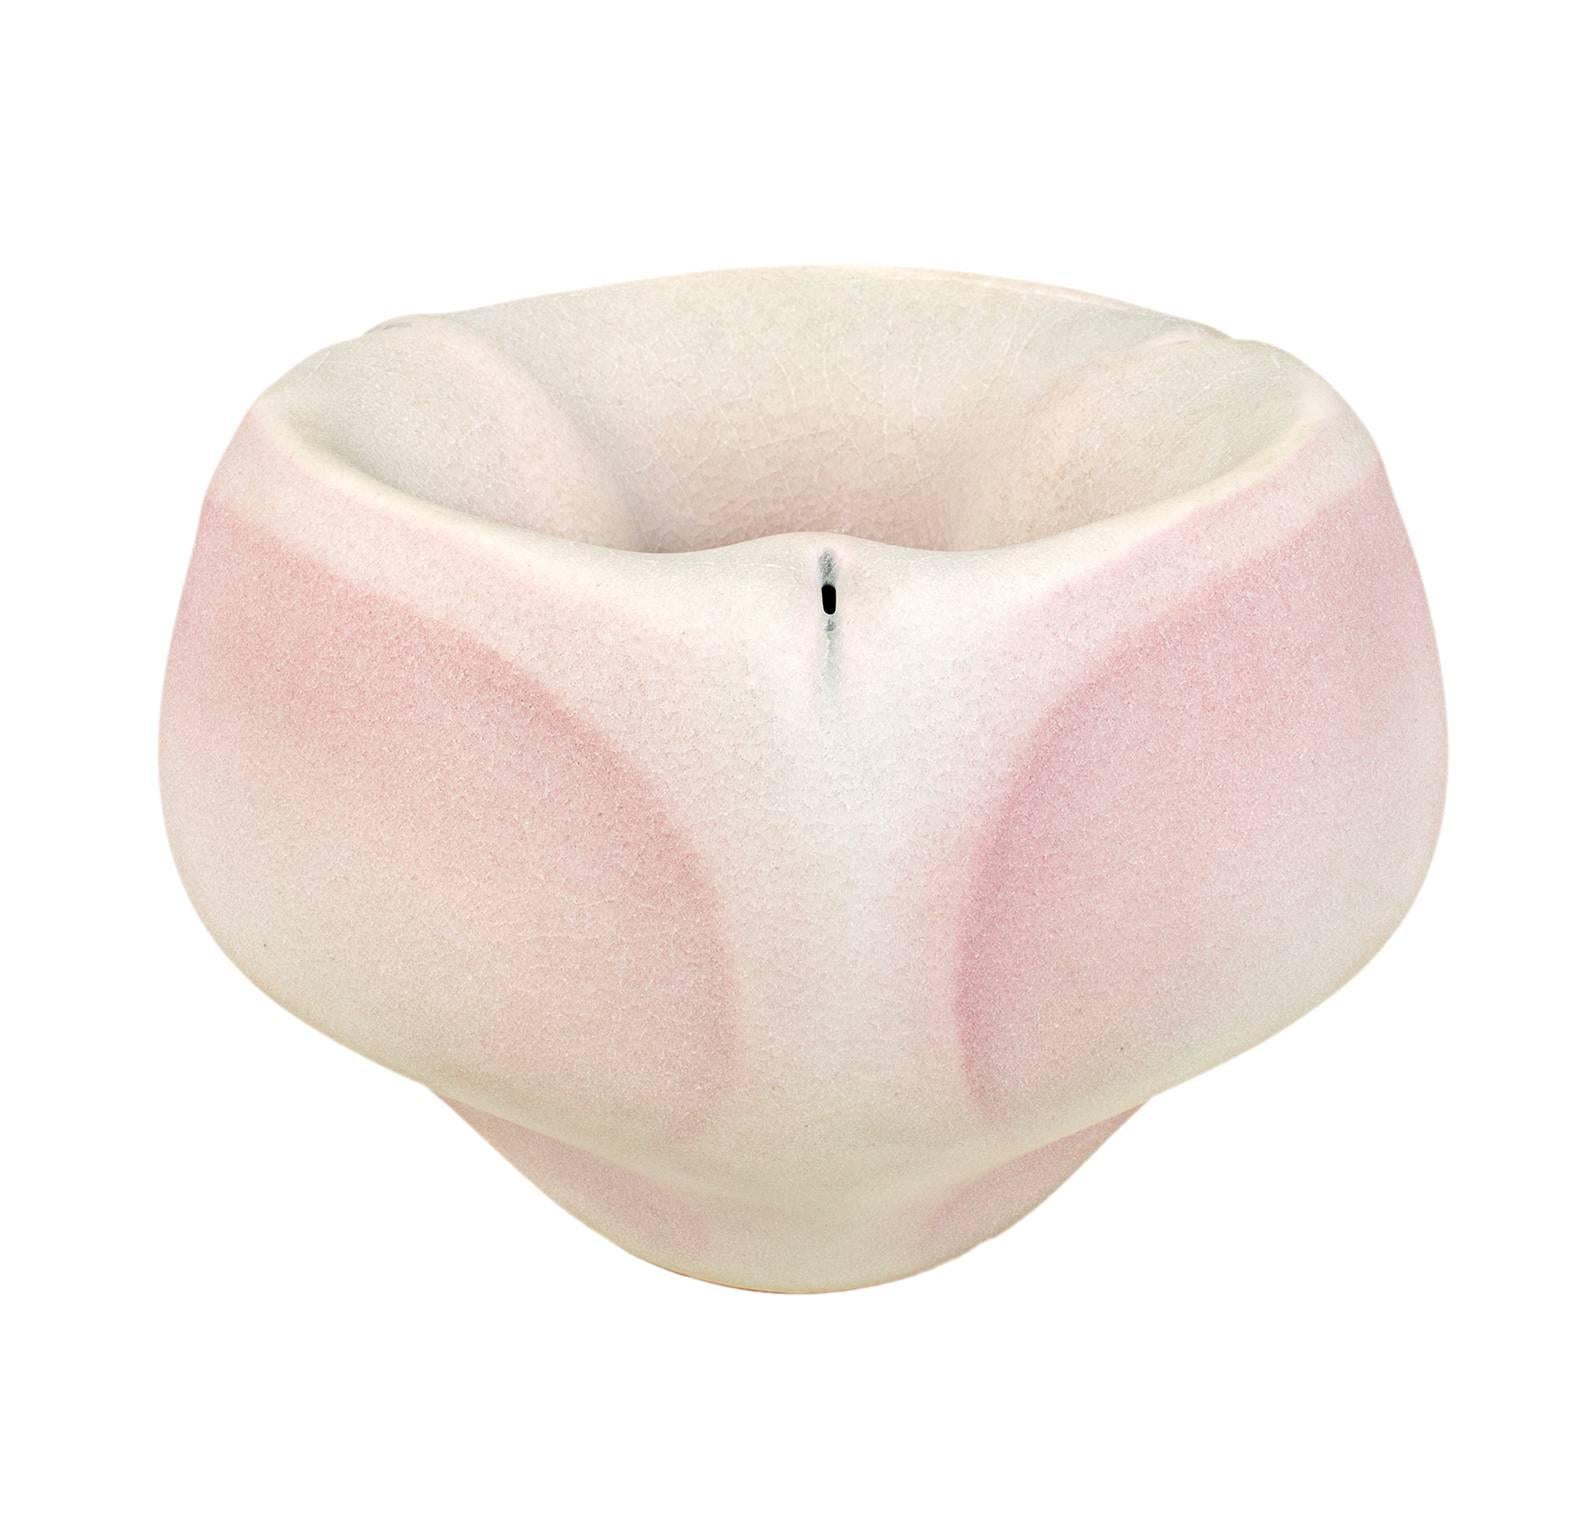 "Flower" est un bol en porcelaine céramique à double paroi de Wayne Fischer. Il présente une délicate coloration rose et blanche. 

4 1/2" x 7" de diamètre

Céramiste de Milwaukee résidant actuellement en France.

Université du Wisconsin - Milwaukee